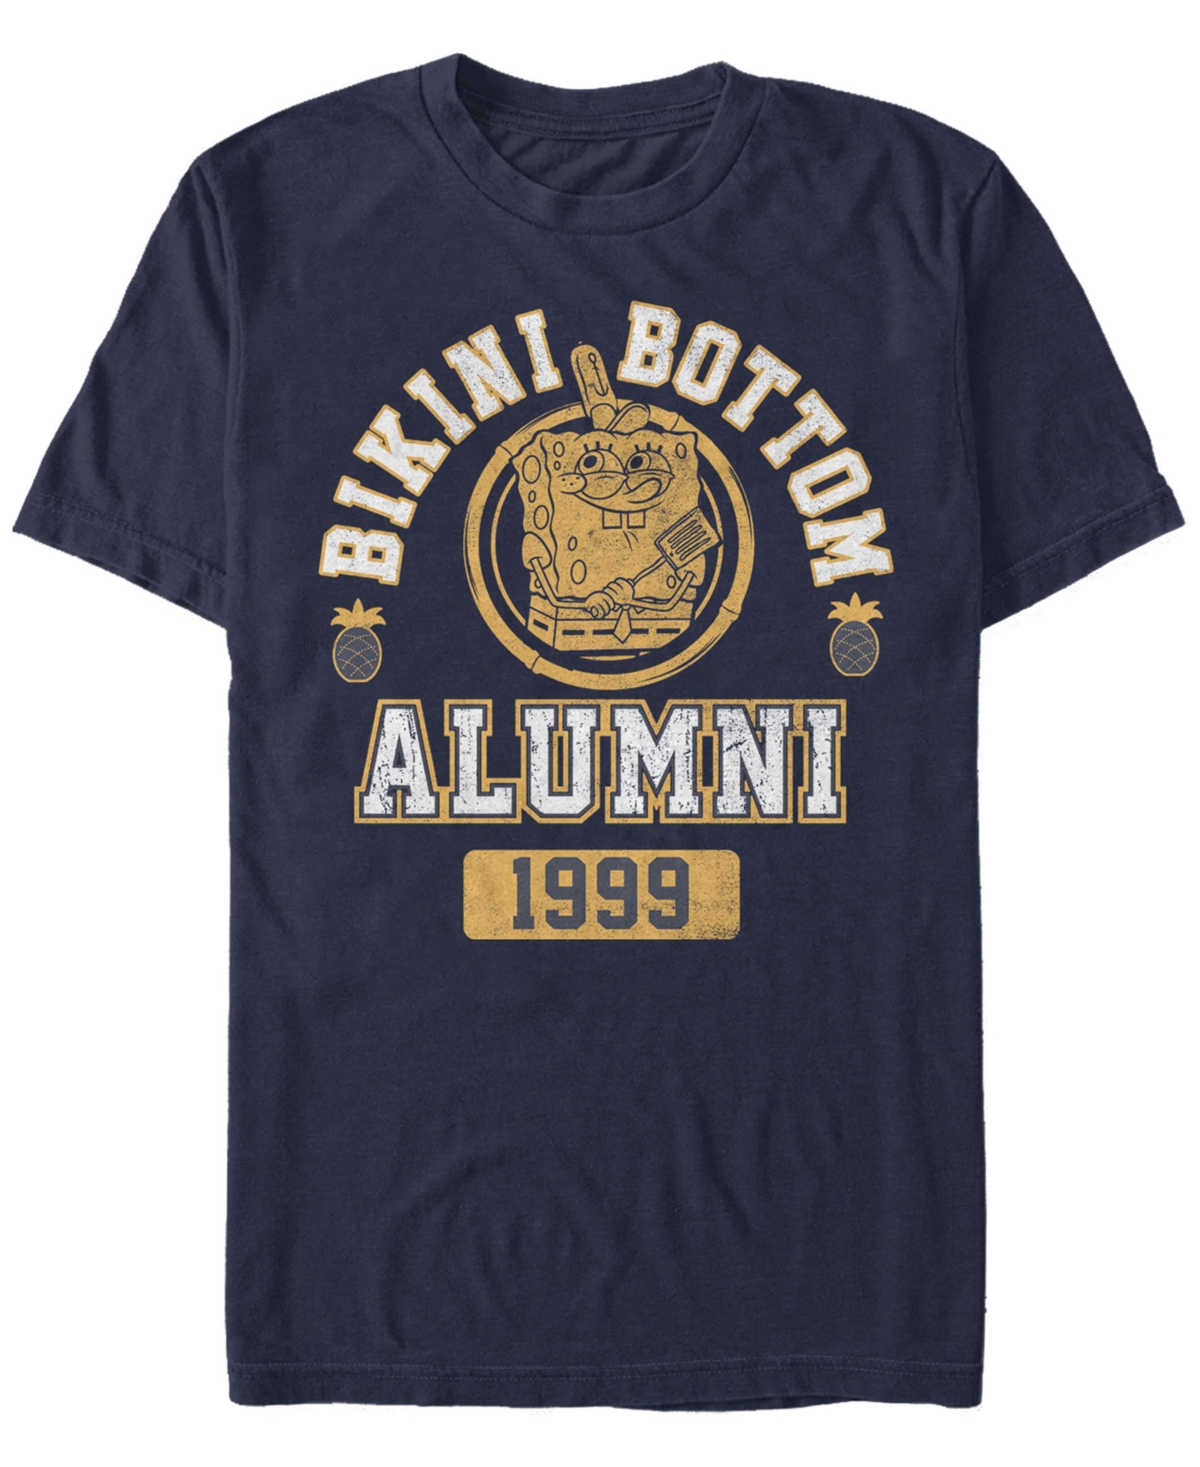 Men's Bikini Bottom Alumni Short Sleeve Crew T-shirt - Navy